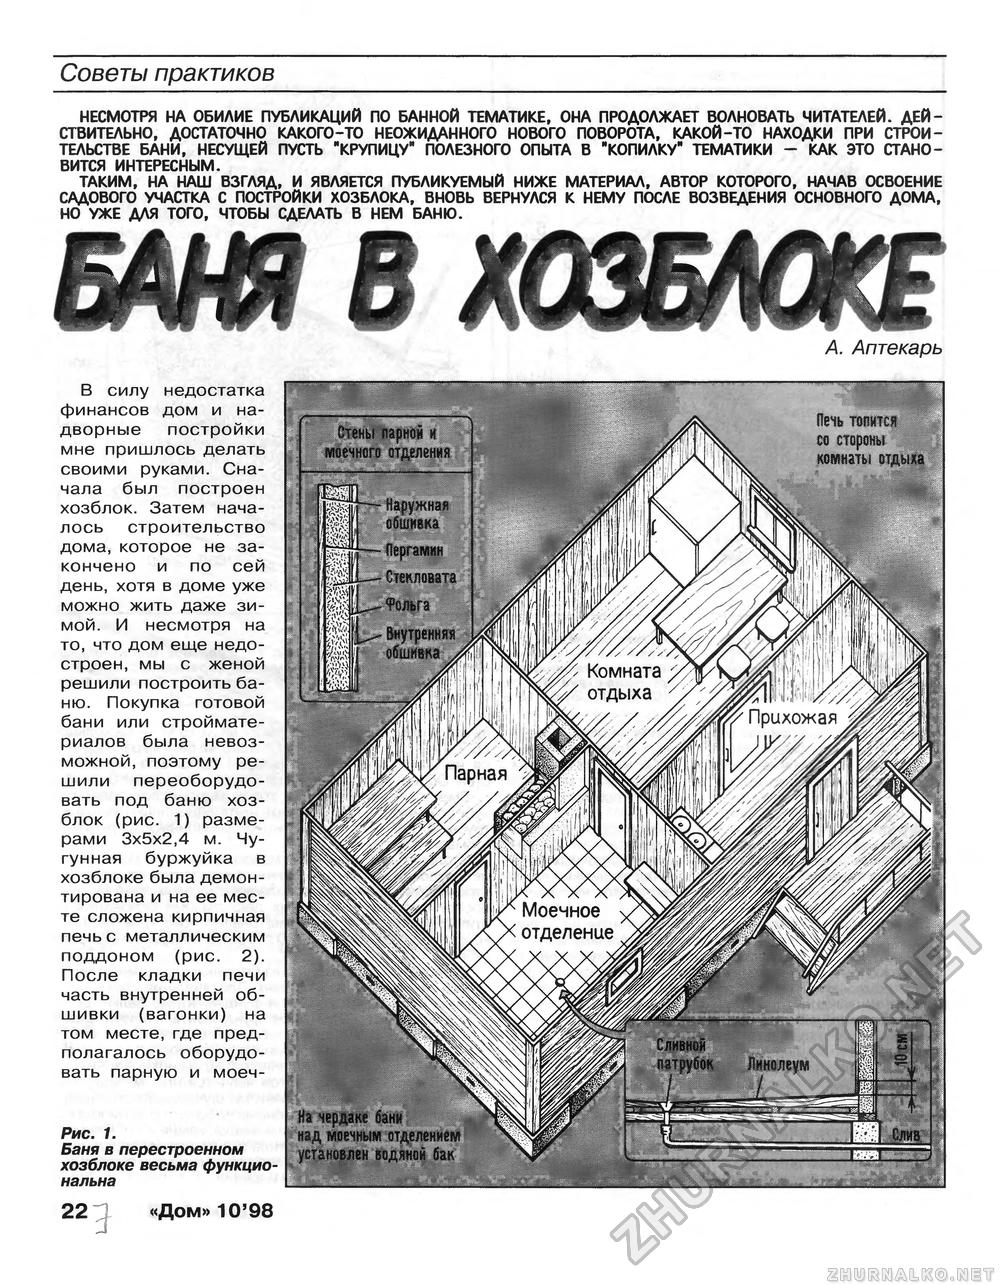 Дом 1998-10, страница 22